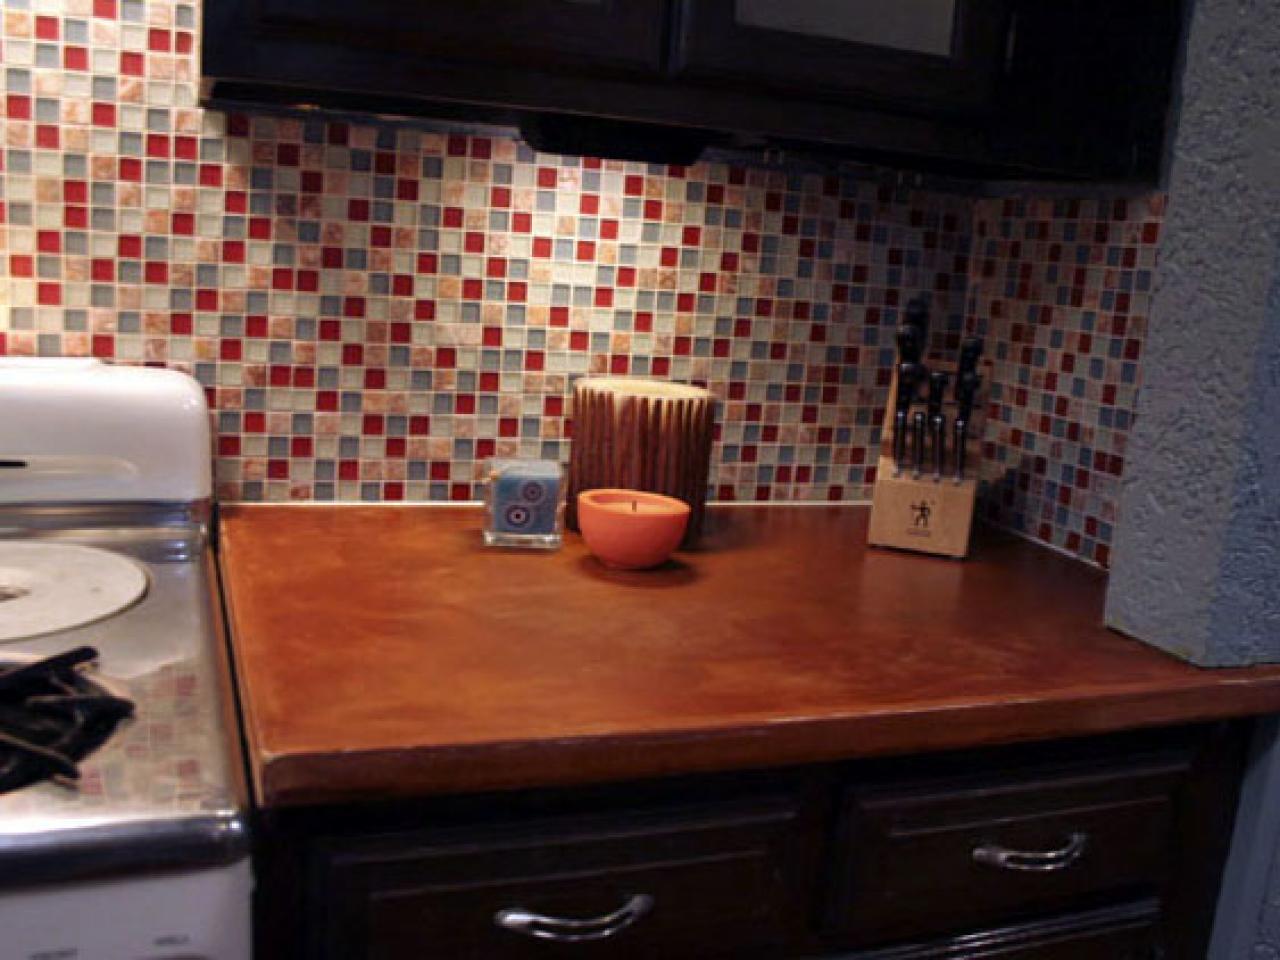 Tile Backsplash In Your Kitchen, How To Install A Tile Backsplash